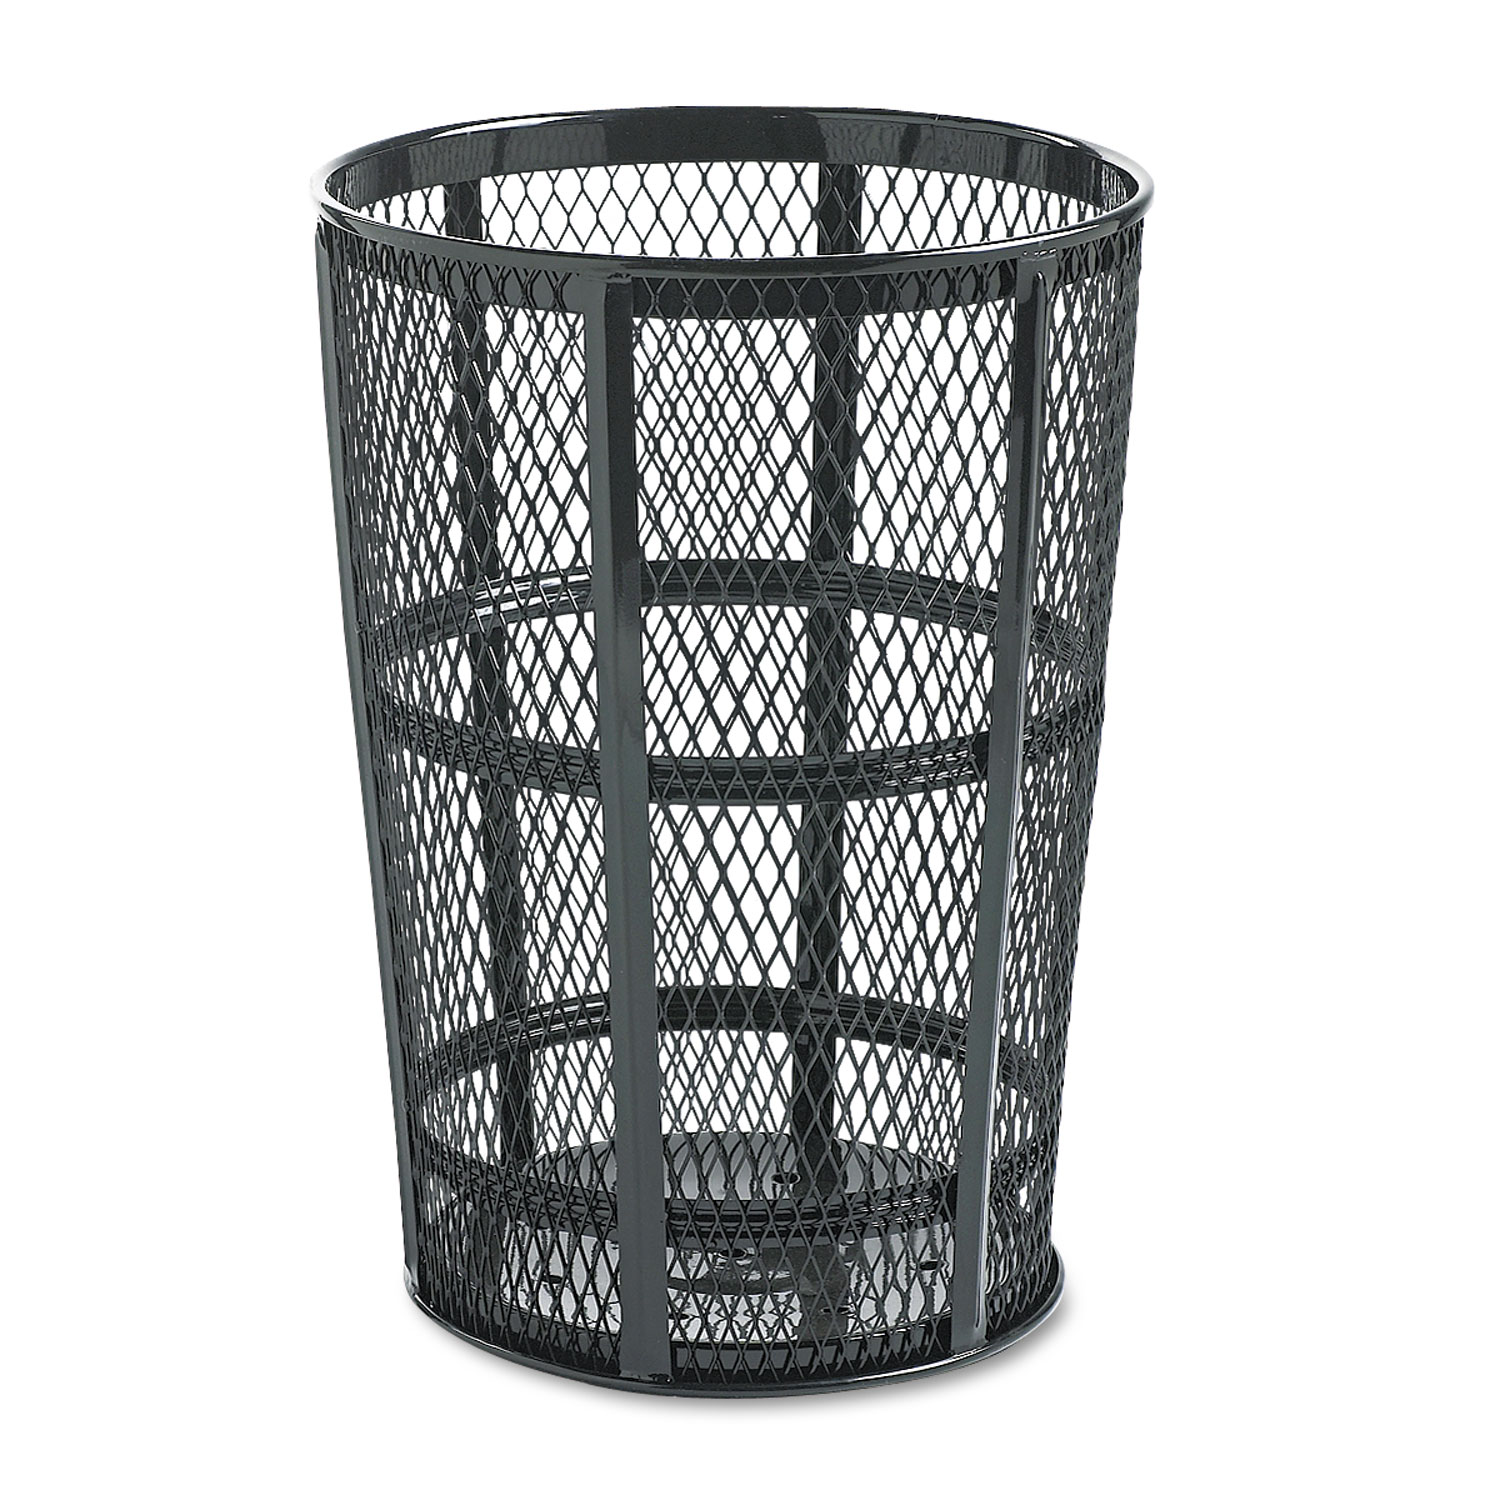 Steel Street Basket Waste Receptacle, Round, Steel, 45 gal, Black